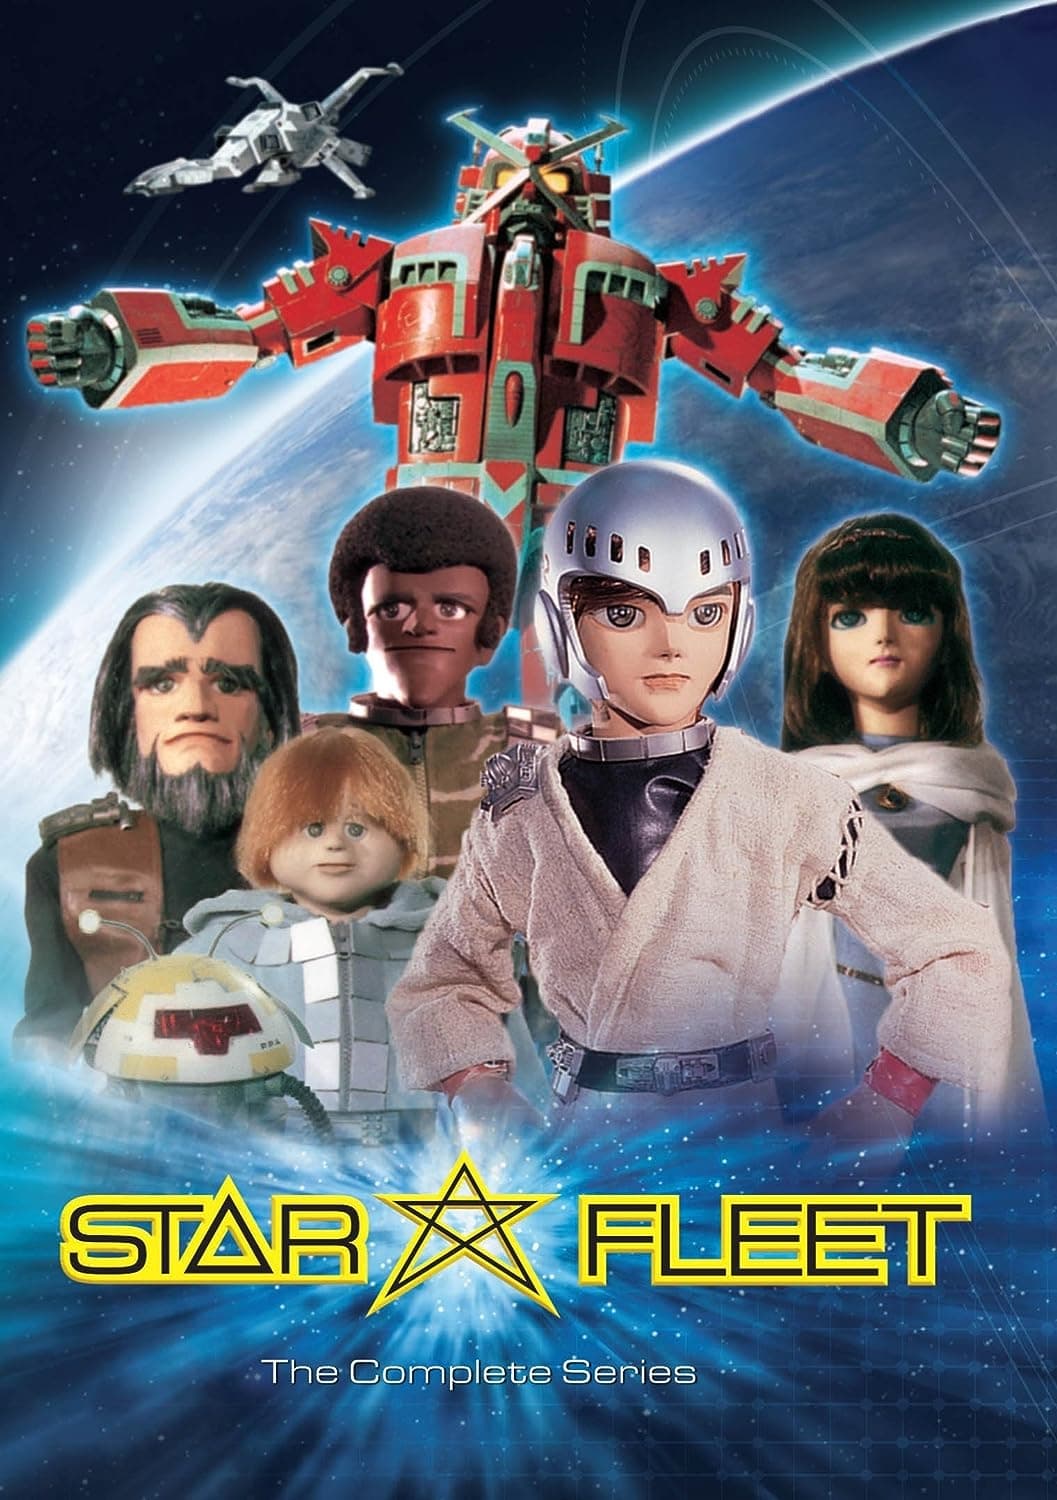 Star fleet